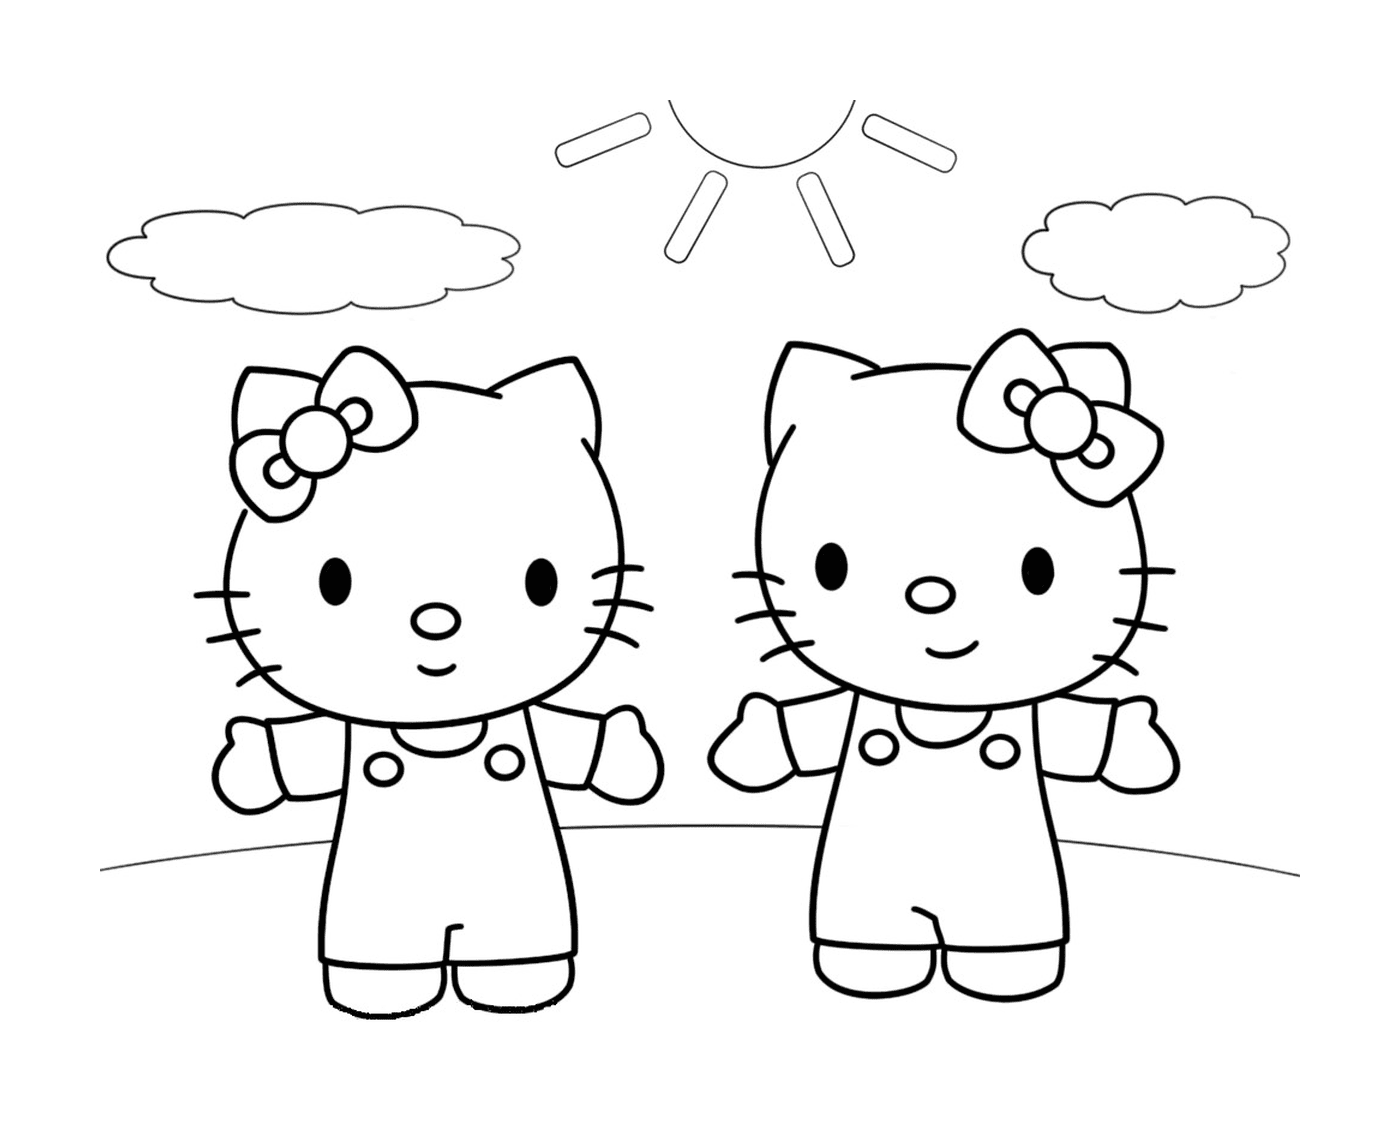  Zwei Hello Kitty Seite an Seite 